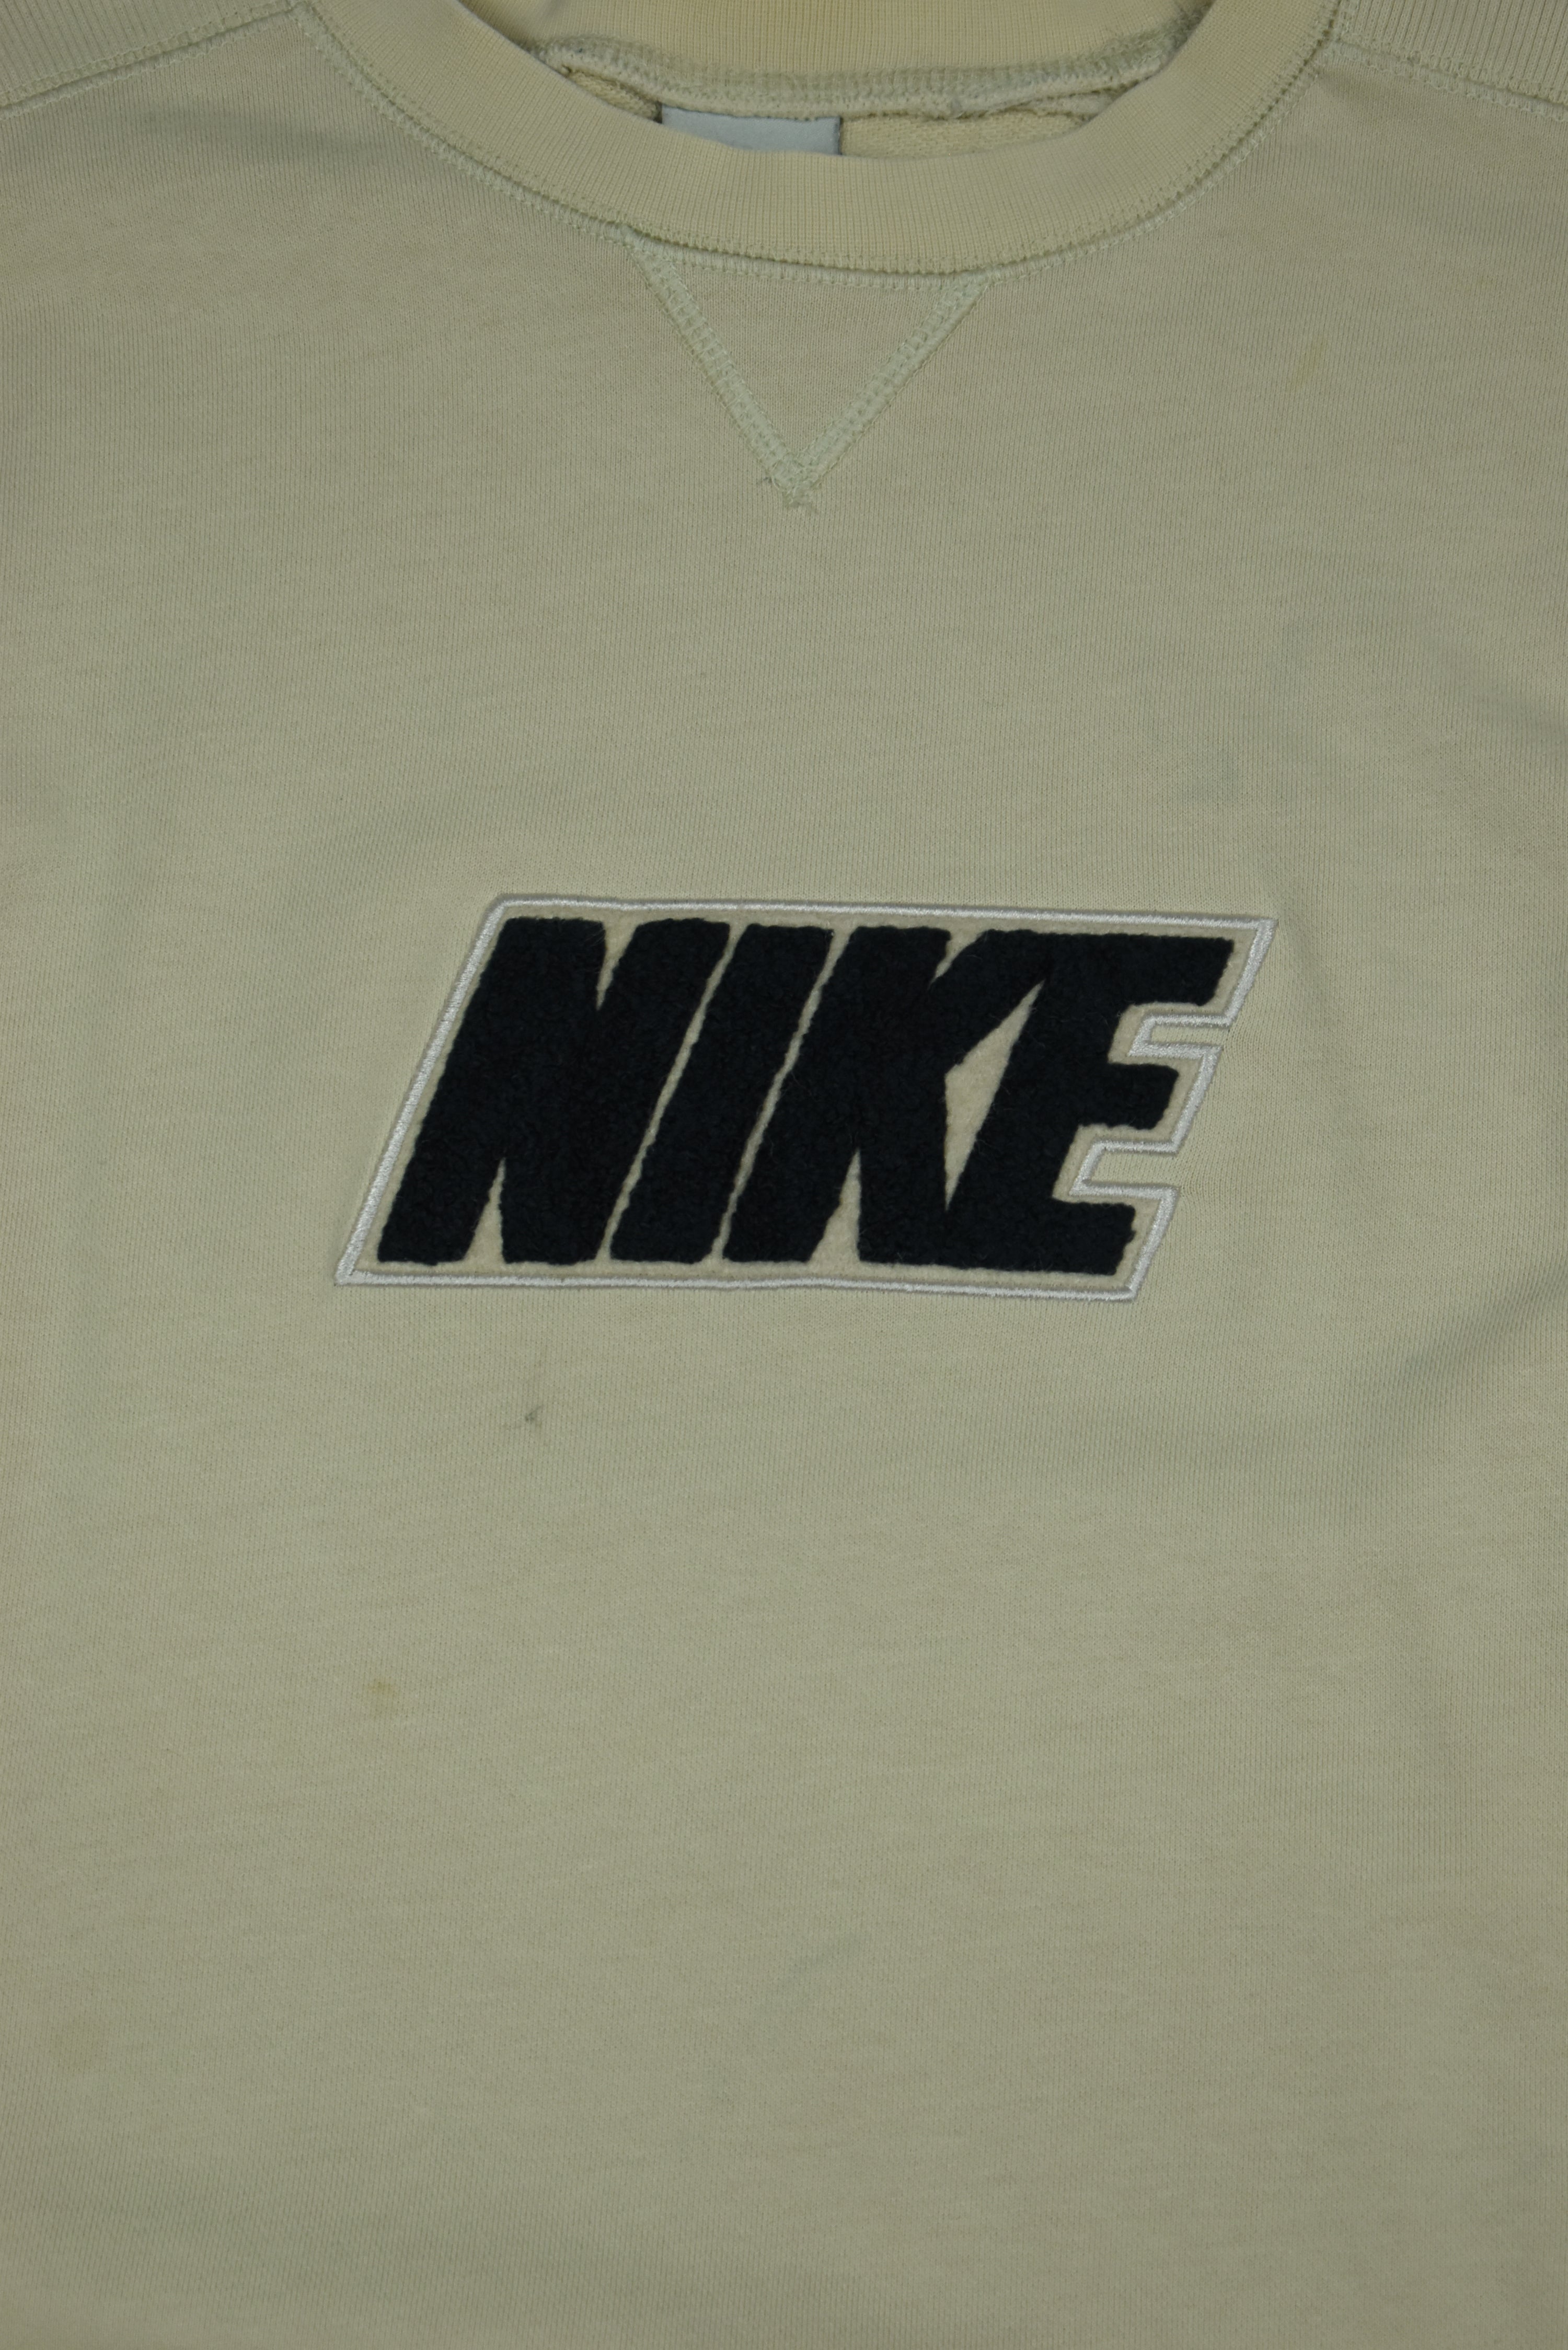 Vintage Nike Embroidered Carpet Print Sweatshirt Medium